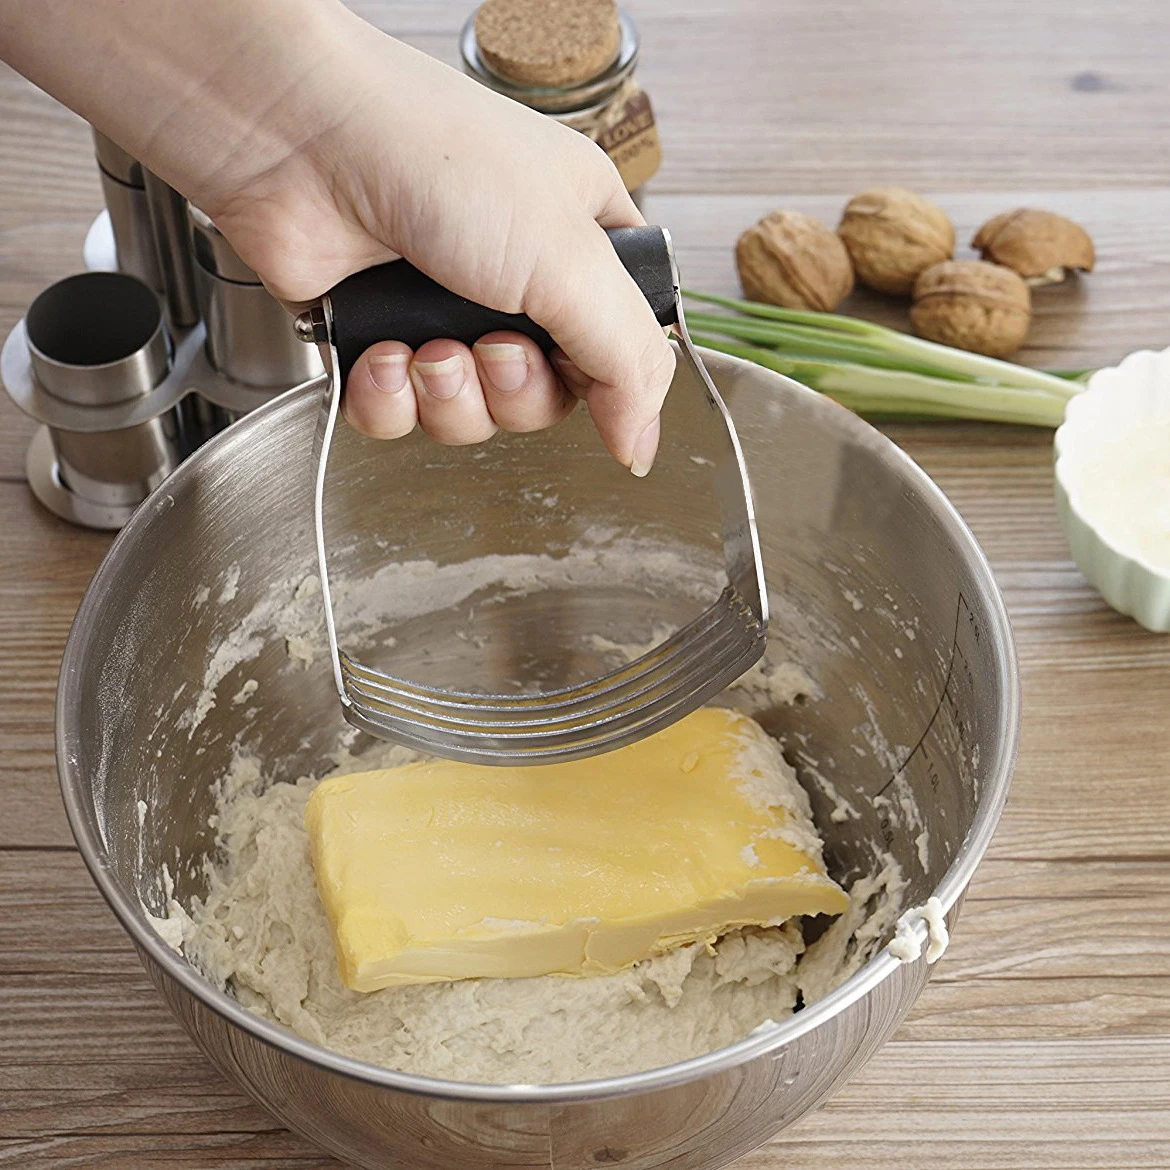 OnnPnnQ нож для выпечки Кондитерские блендеры миксер инструменты для выпечки Кухонные гаджеты